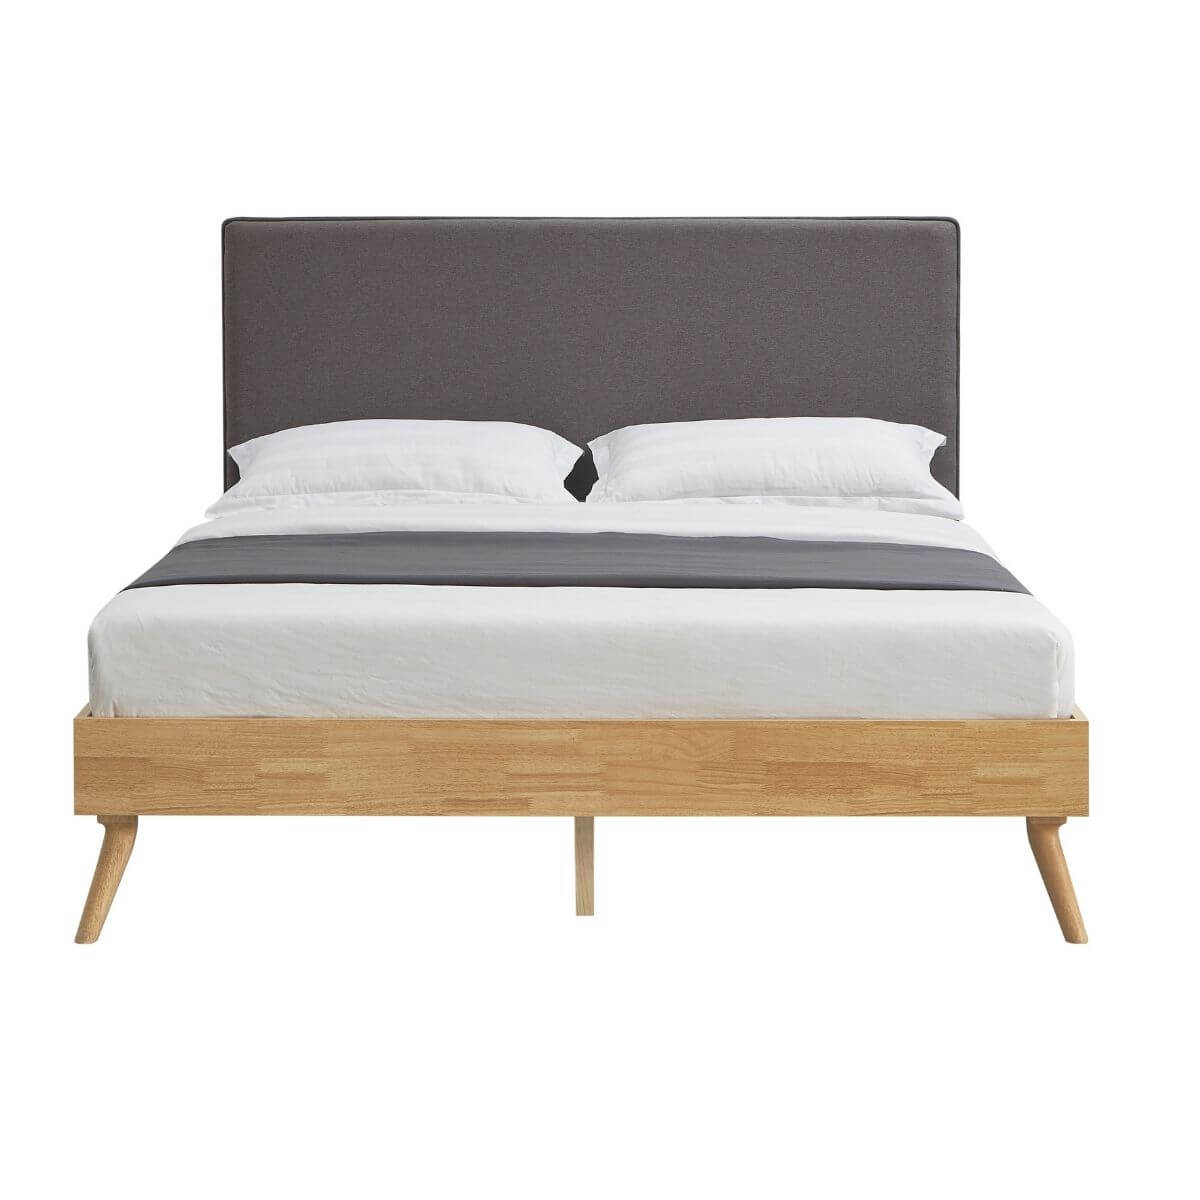 Natural Oak Ensemble Bed Frame Wooden Slat Fabric Headboard Queen-Upinteriors